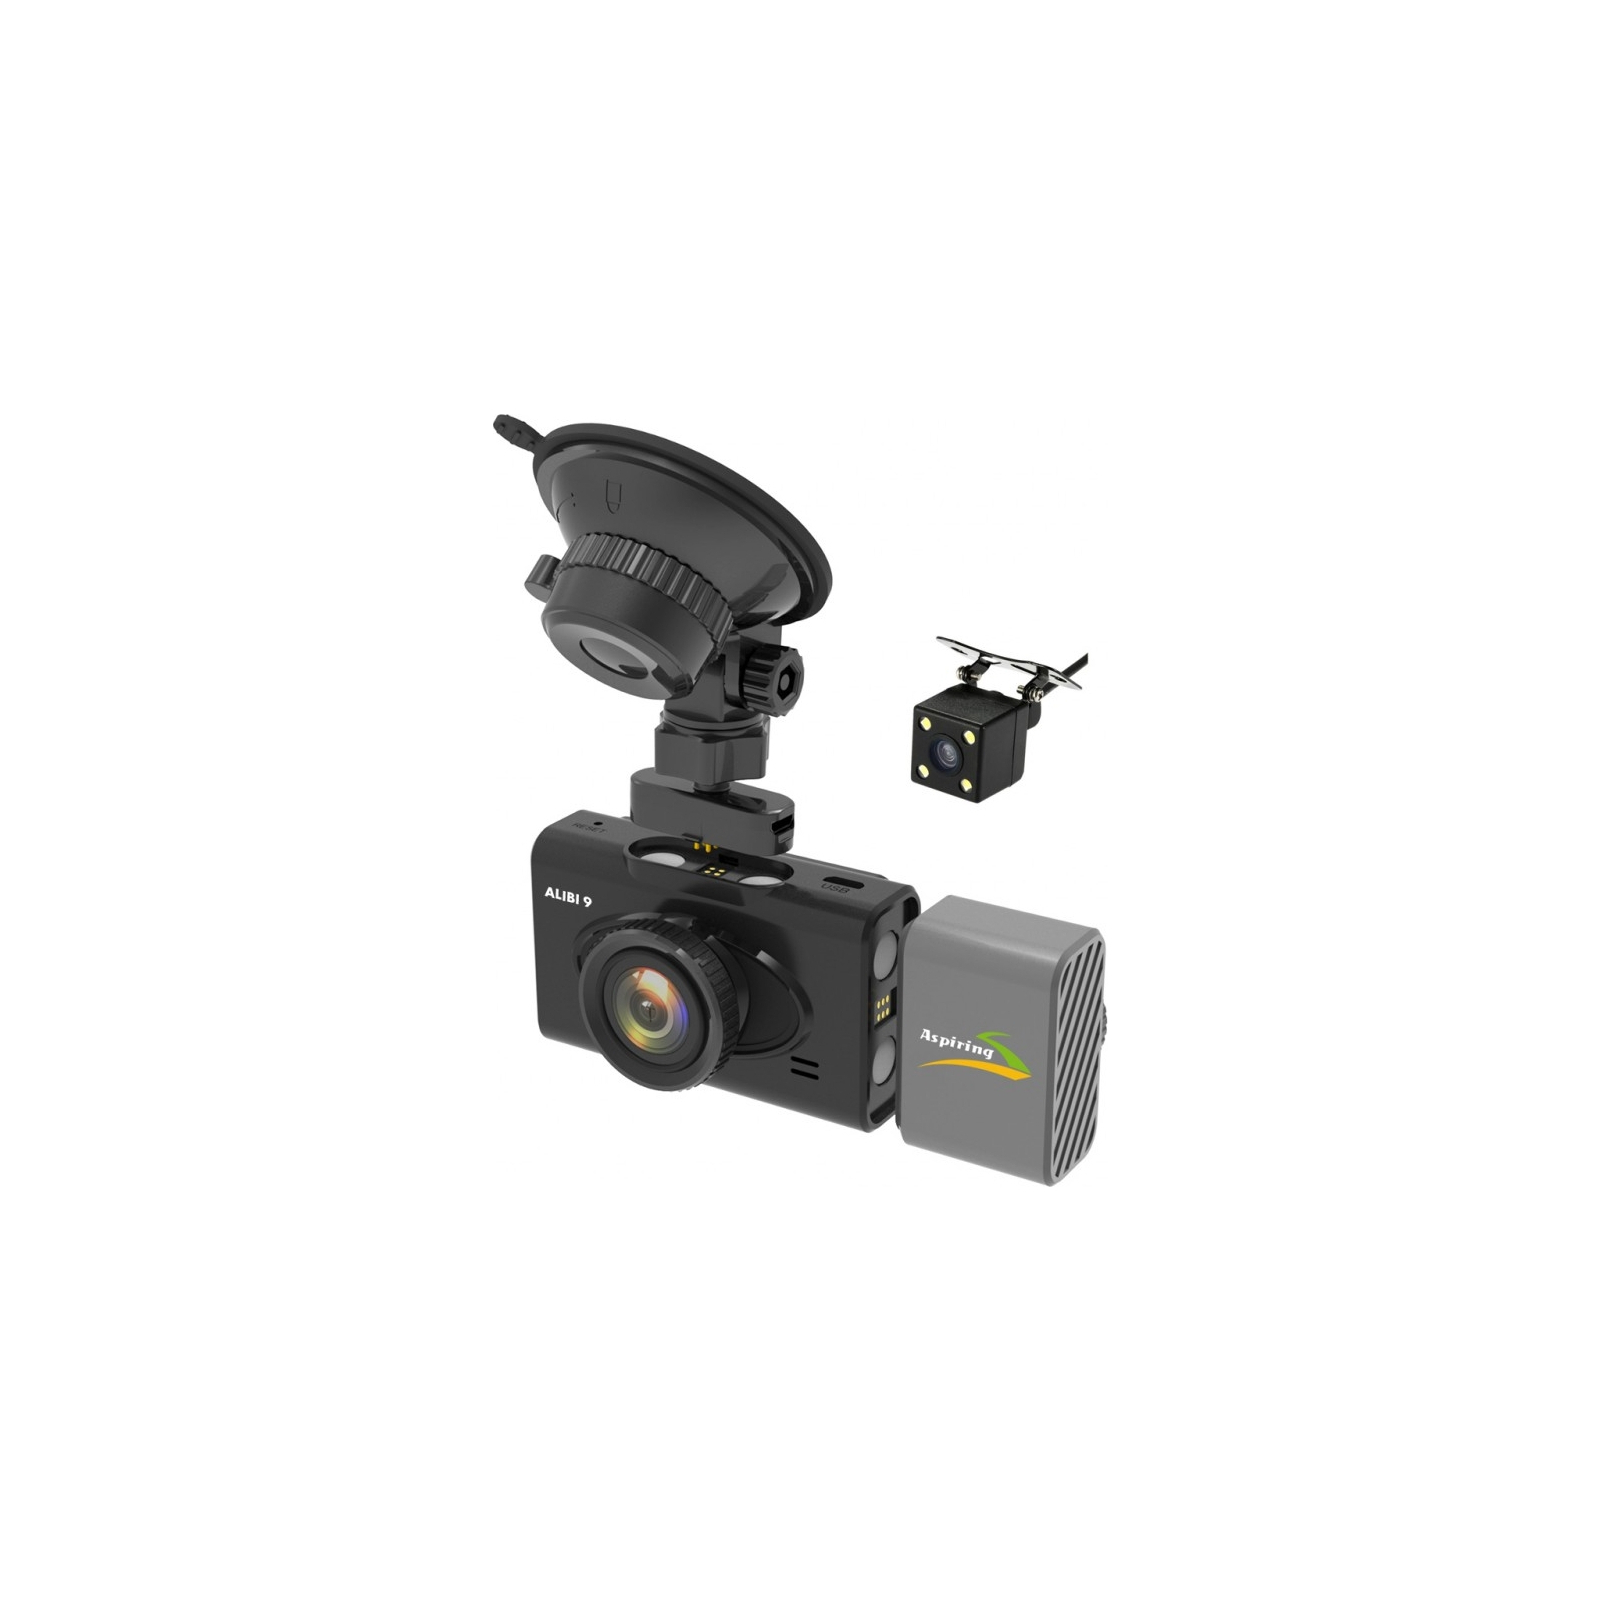 Видеорегистратор Aspiring Alibi 9 GPS, 3 Cameras, Speedcam (Aspiring Alibi 9 GPS, 3 Cameras, Speedcam)